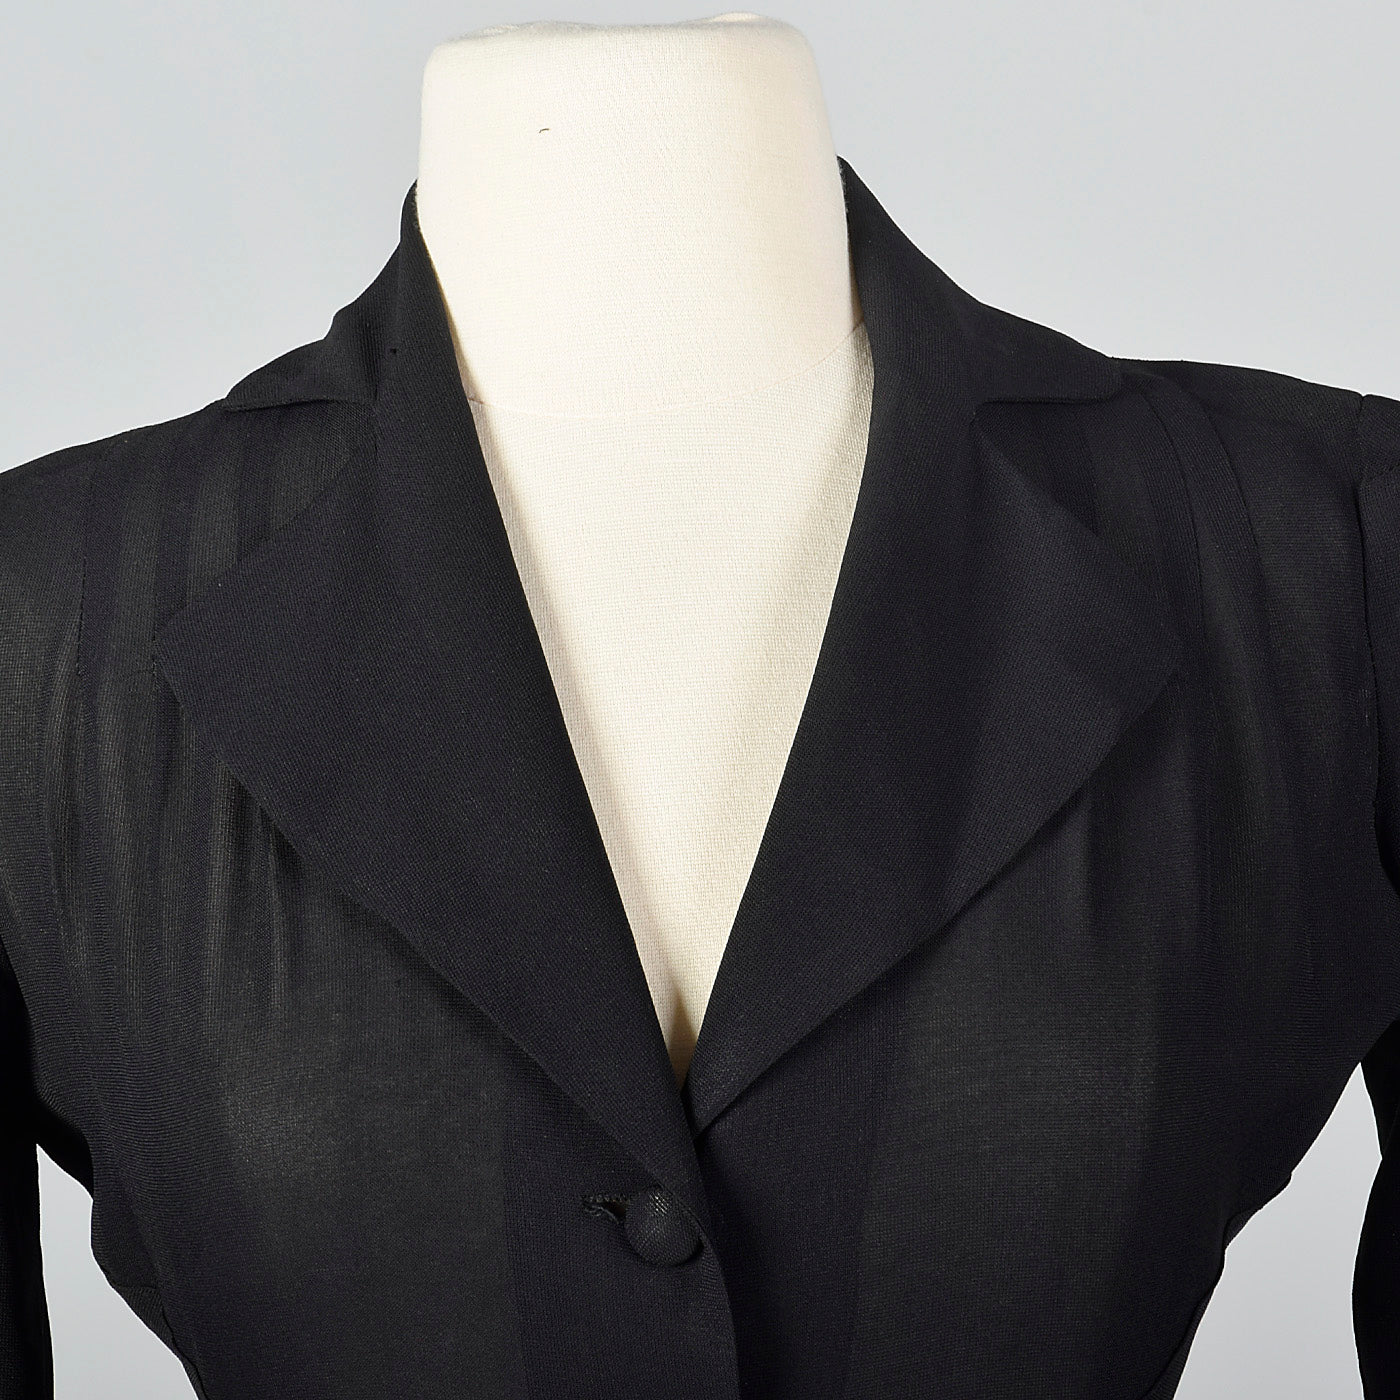 1940s Sheer Black Skirt Suit